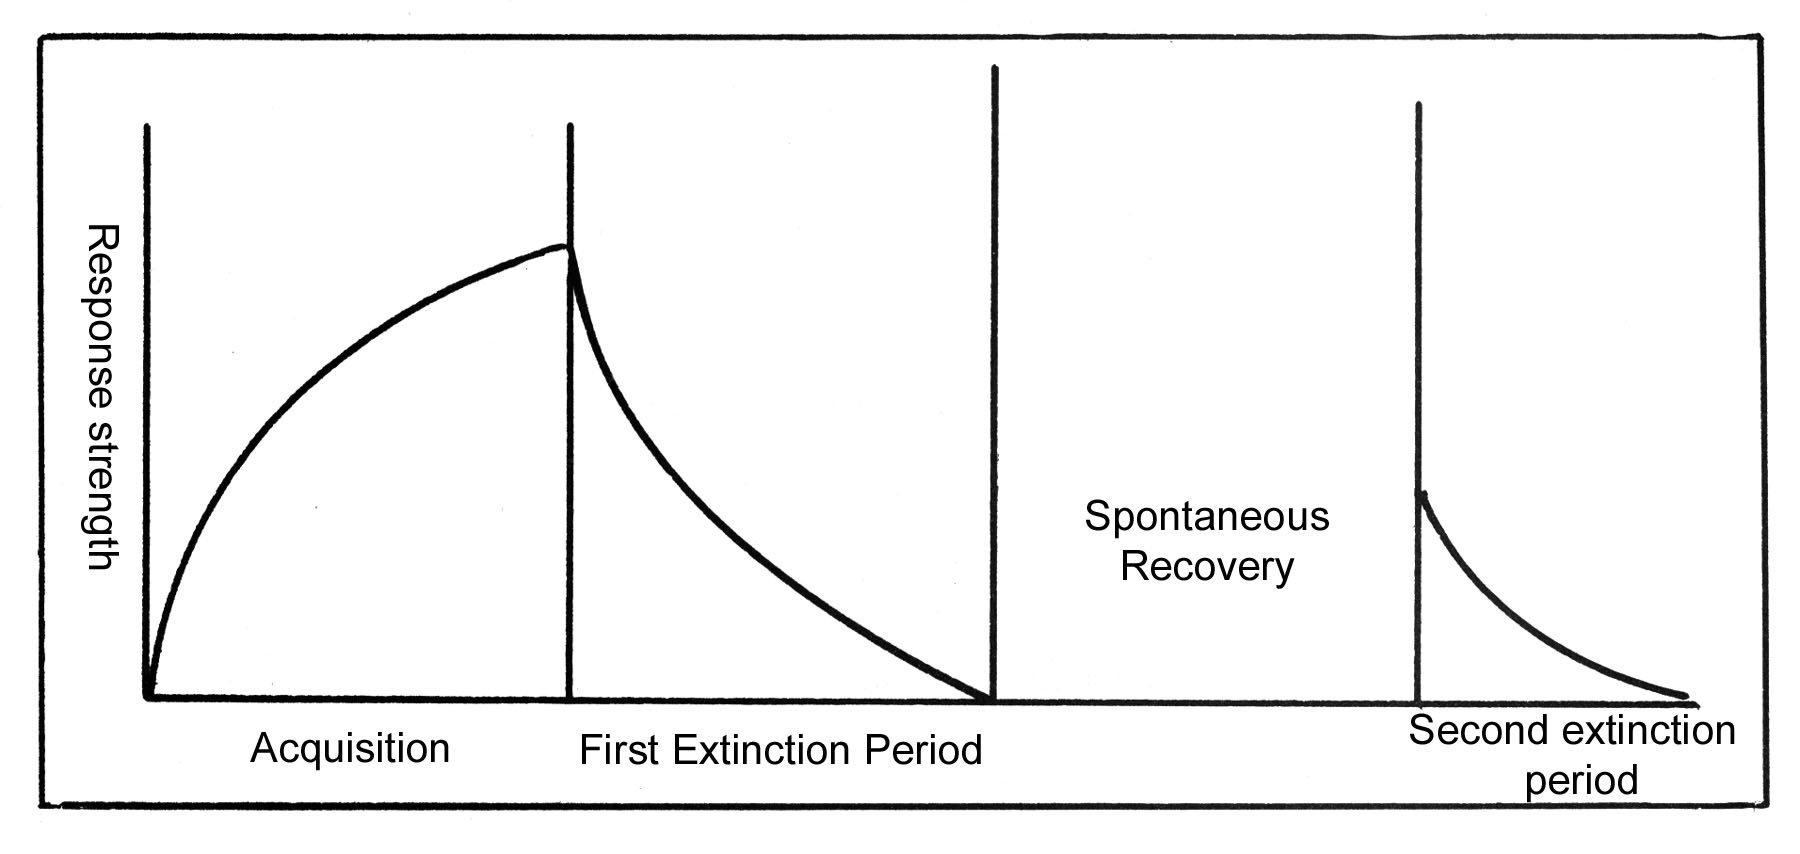 curve shows behavior coming back after extinction